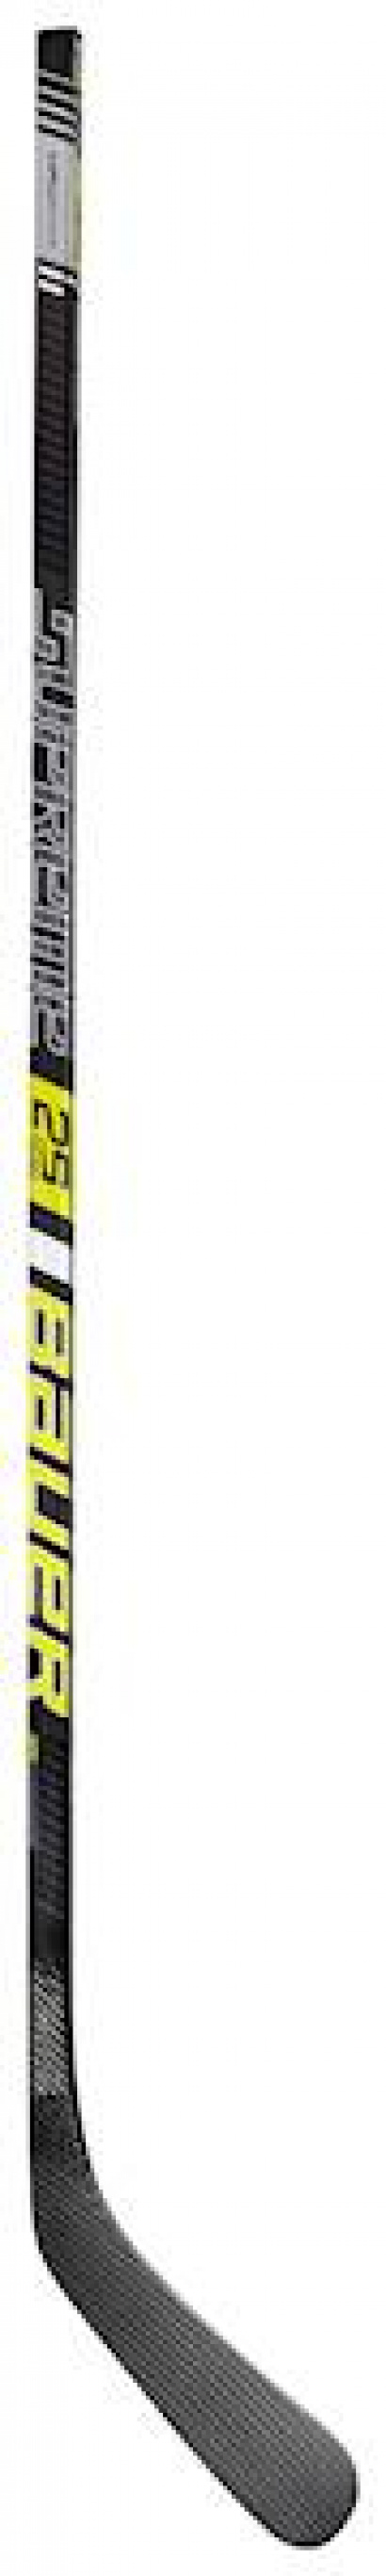 Hockey Sticks BAUER S19 SUPREME 2S TEAM GRIP STICK INT